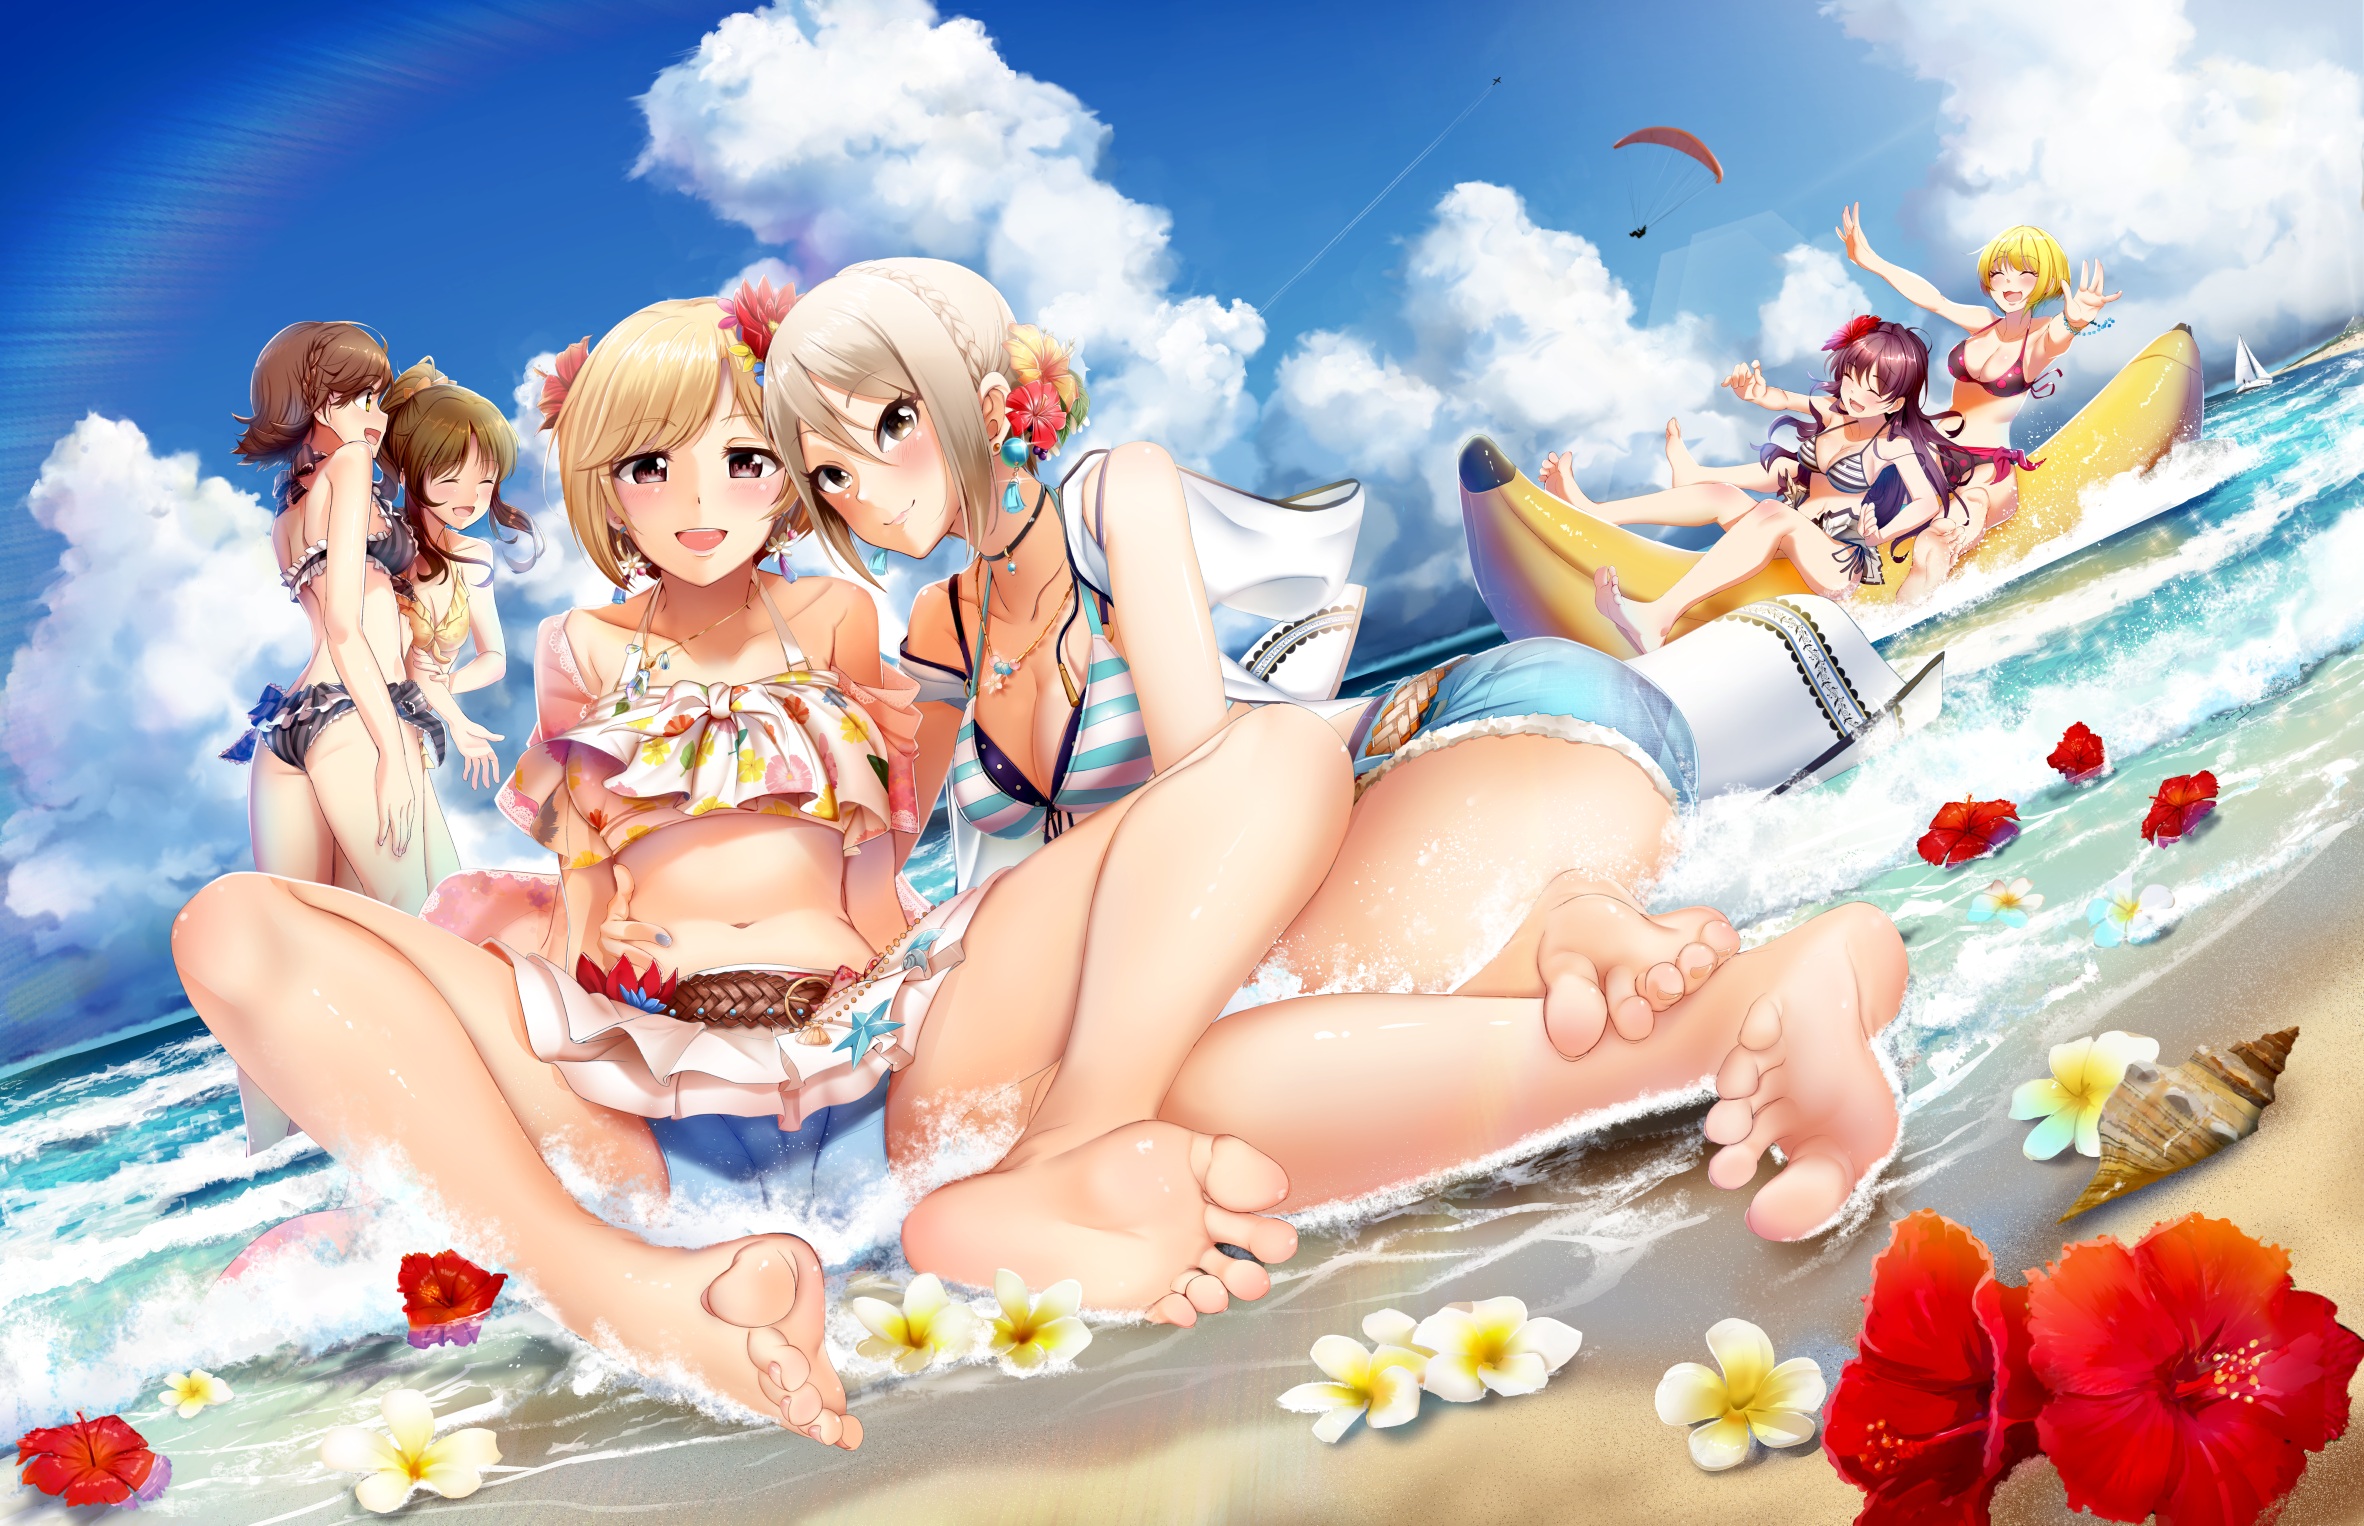 Anime 2364x1526 anime anime girls artwork beach swimwear bikini miniskirt short shorts cleavage feet THE iDOLM@STER Aiba Yumi Honda Mio Ichinose Shiki Miyamoto Frederica Shiomi Syuko casinoep flowers air mattress